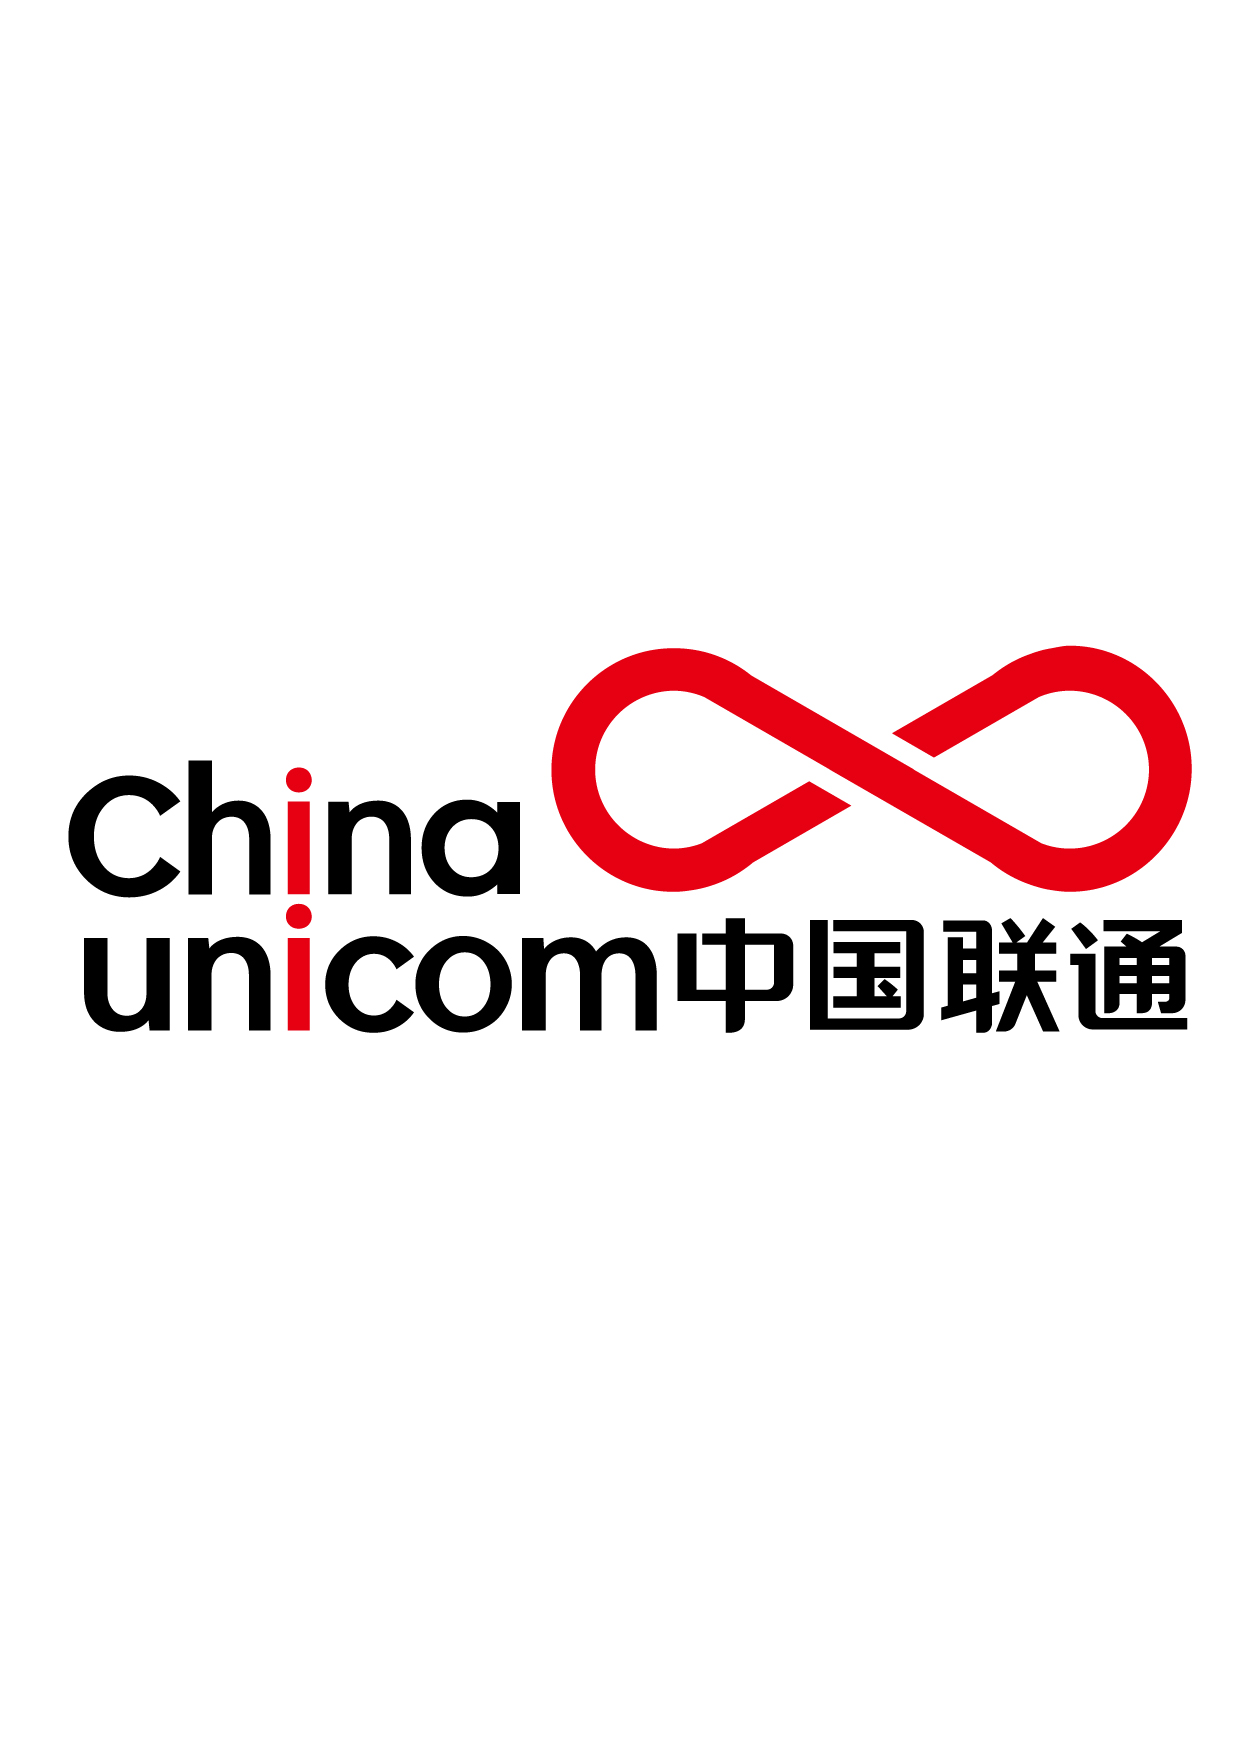 中国联通logo改(个人练习)